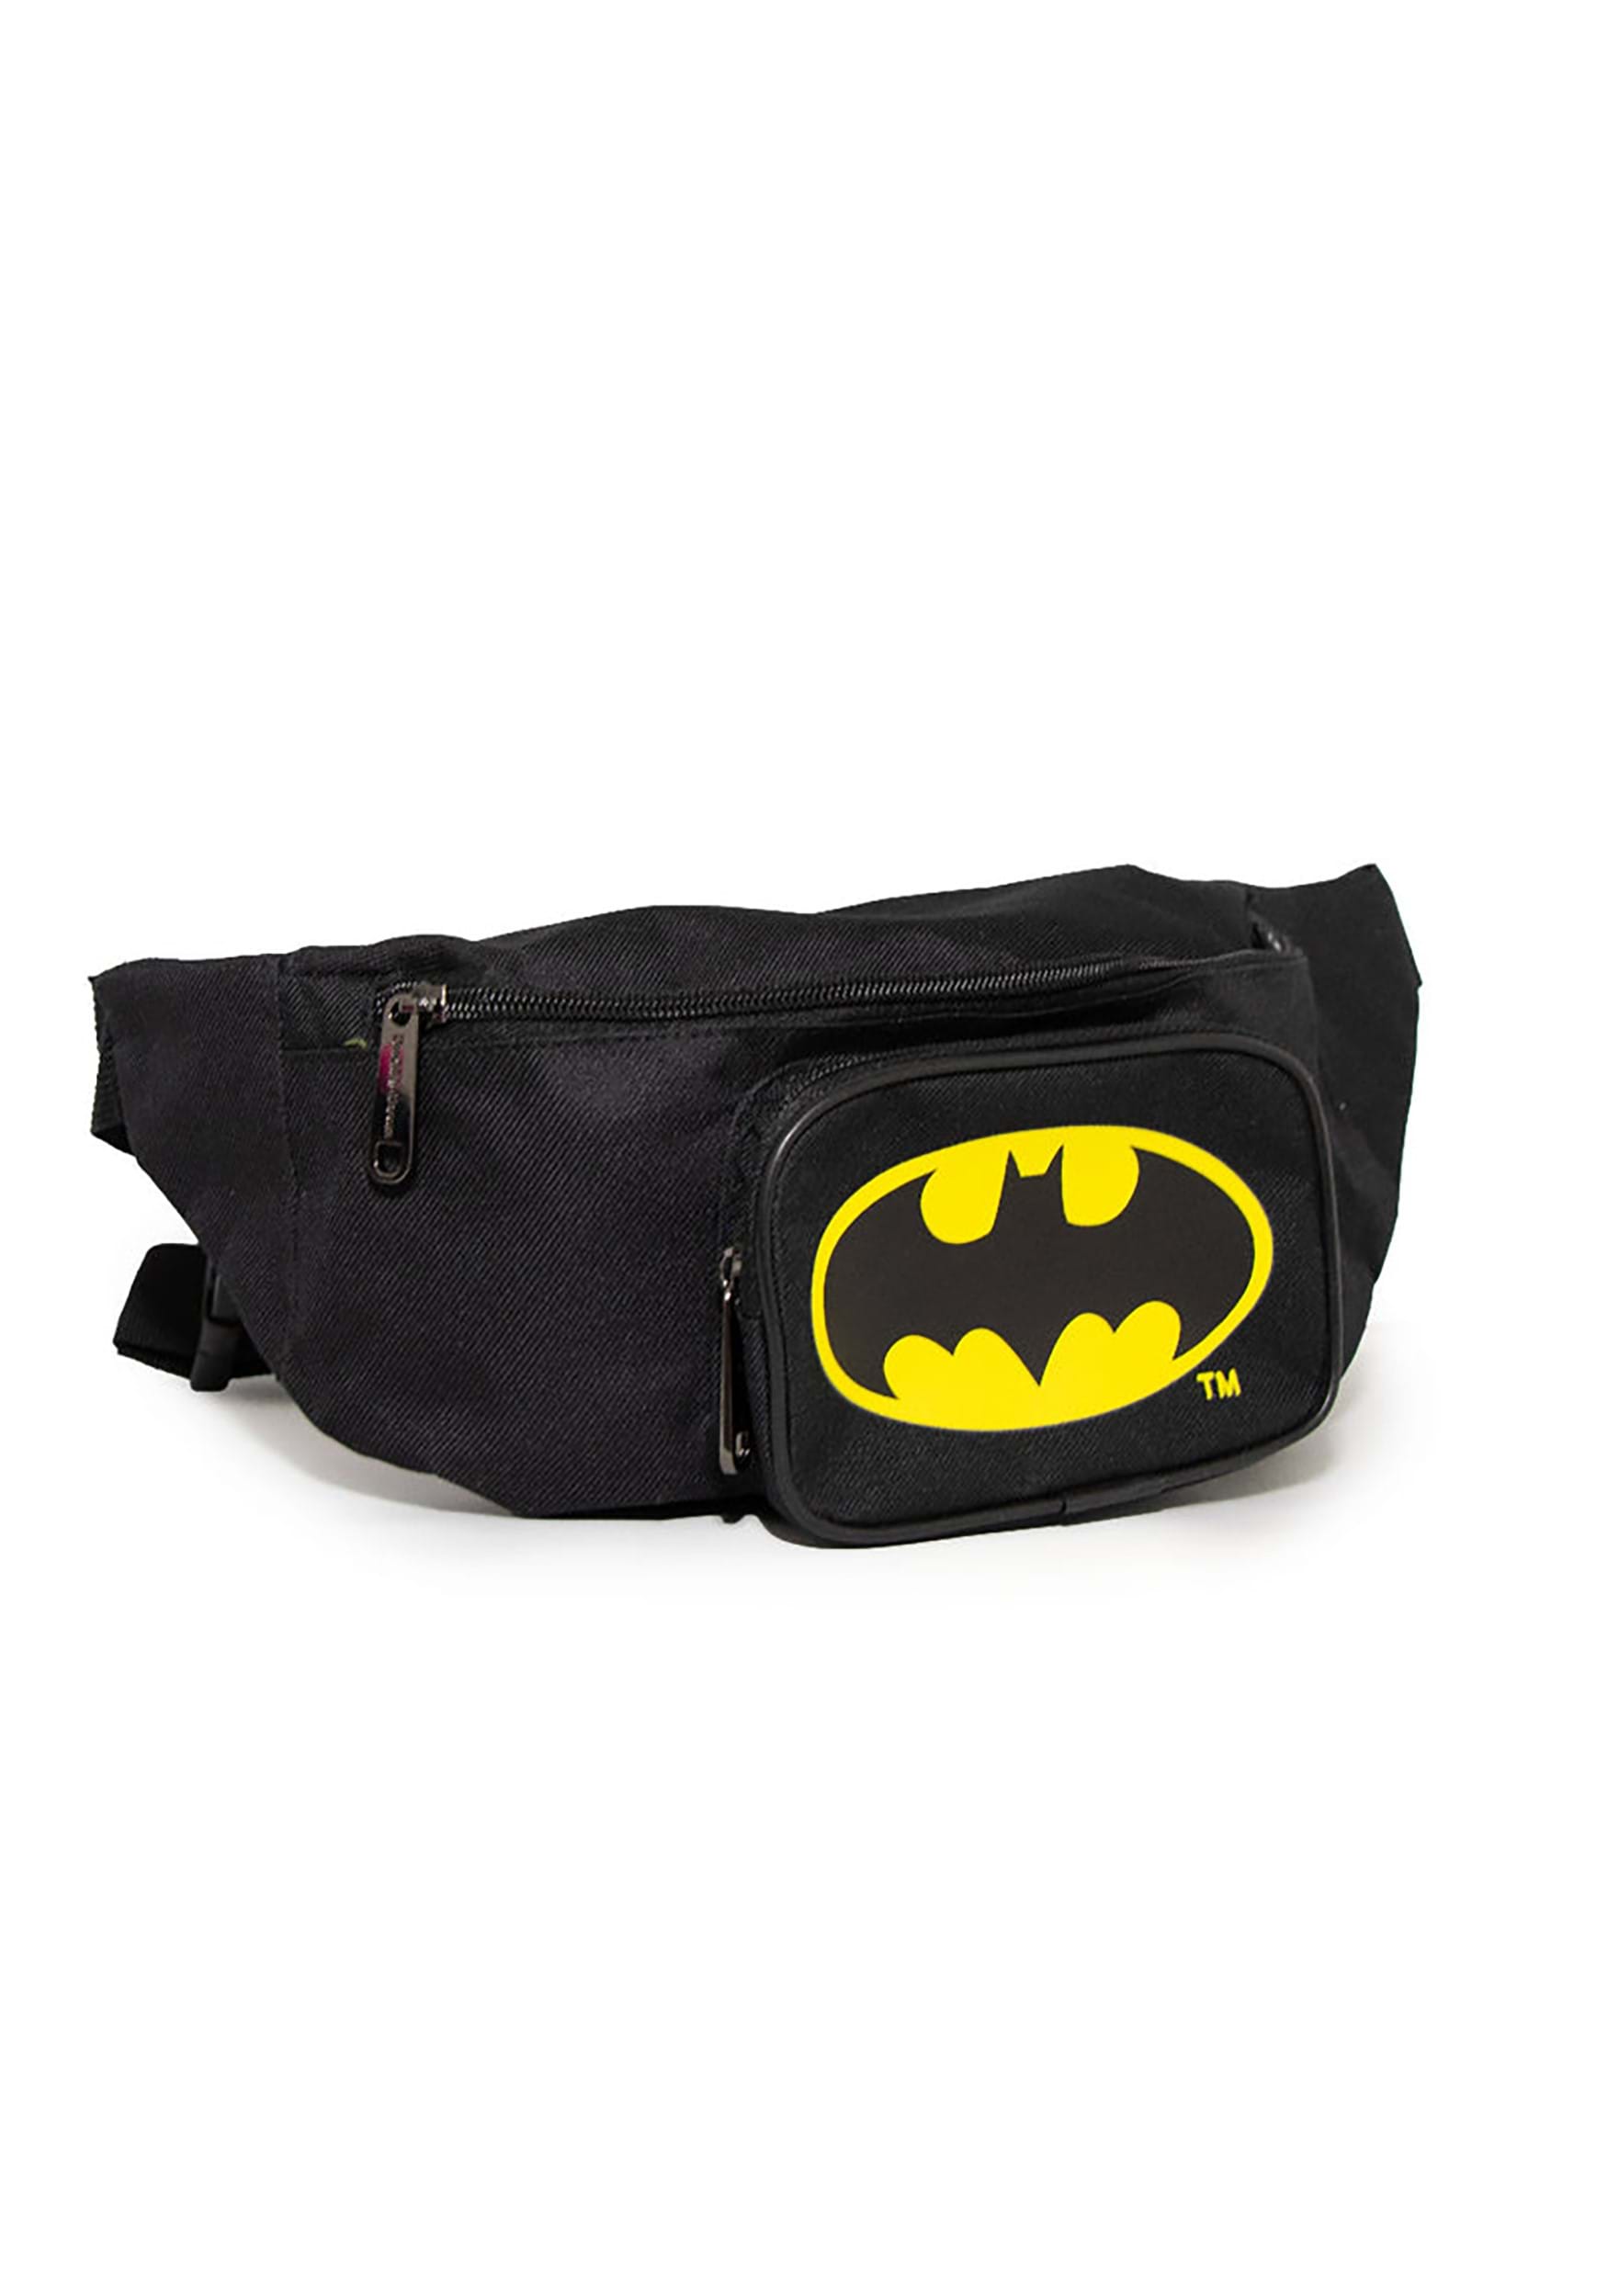 Batman Bat Signal Double Zipper Fanny Pack Bag , Batman Accessories